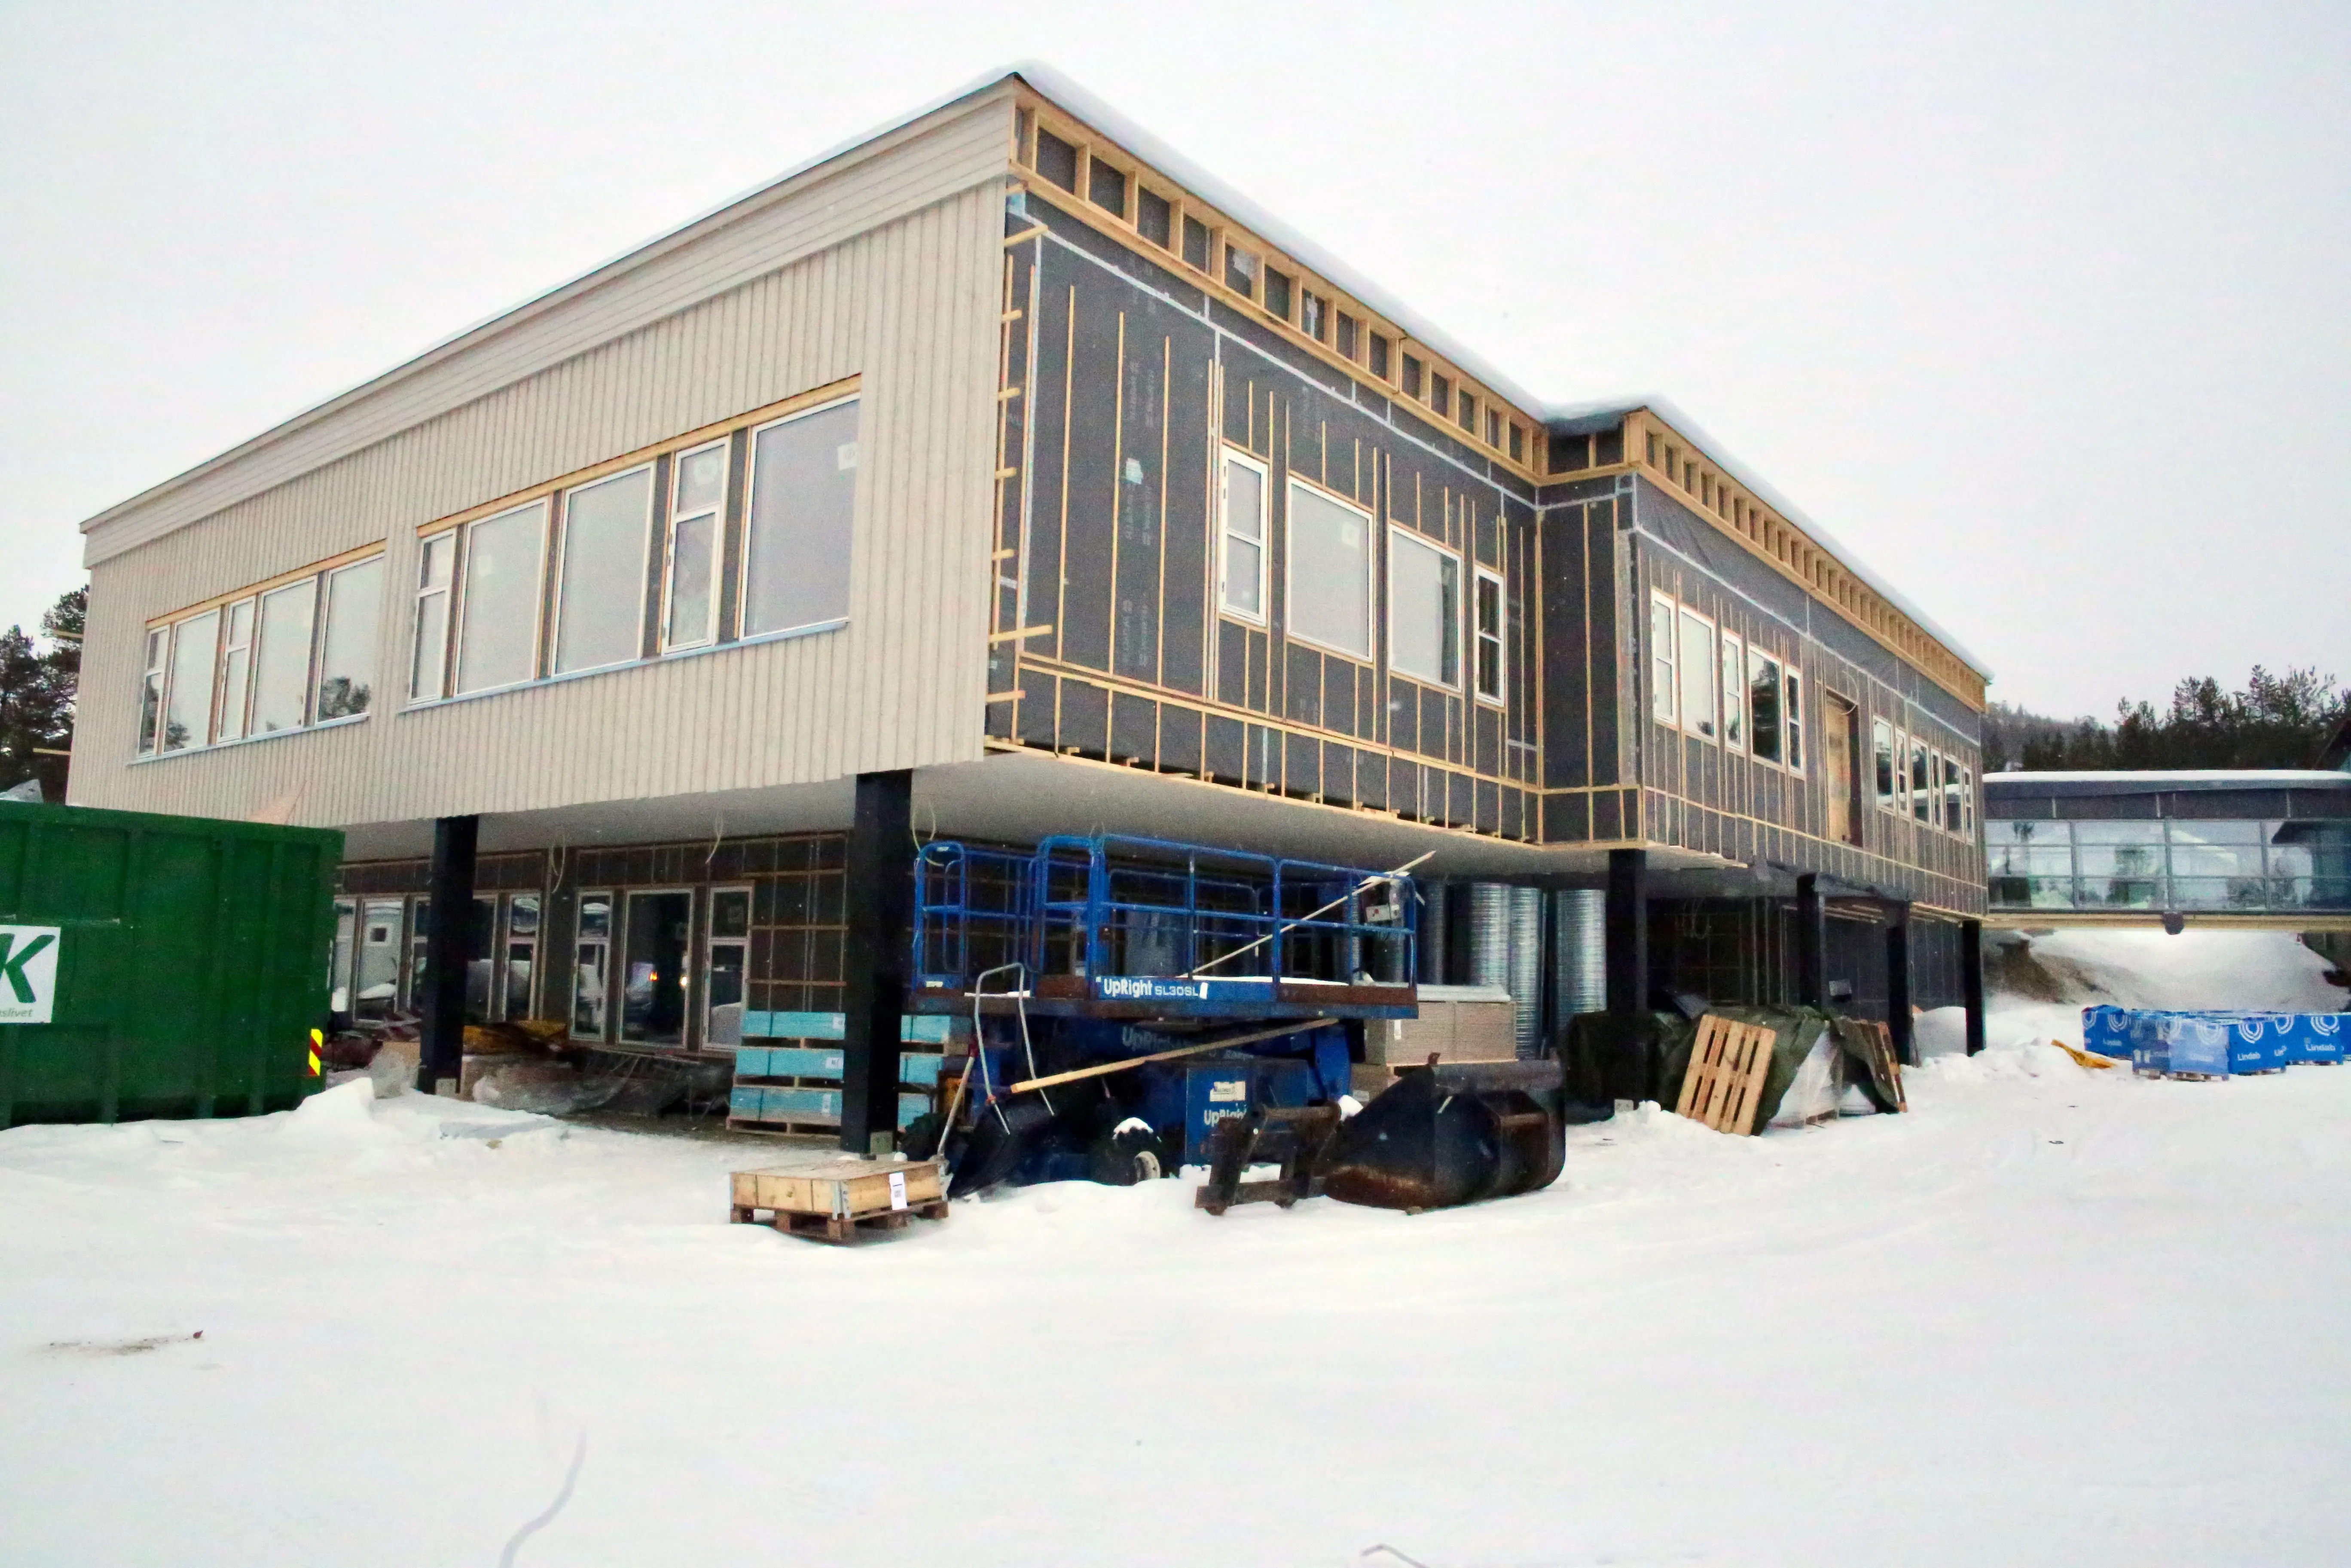 Byggetrinn 3 i Karasjok nærmer seg ferdigstillelse. Slik så det ut i mars.